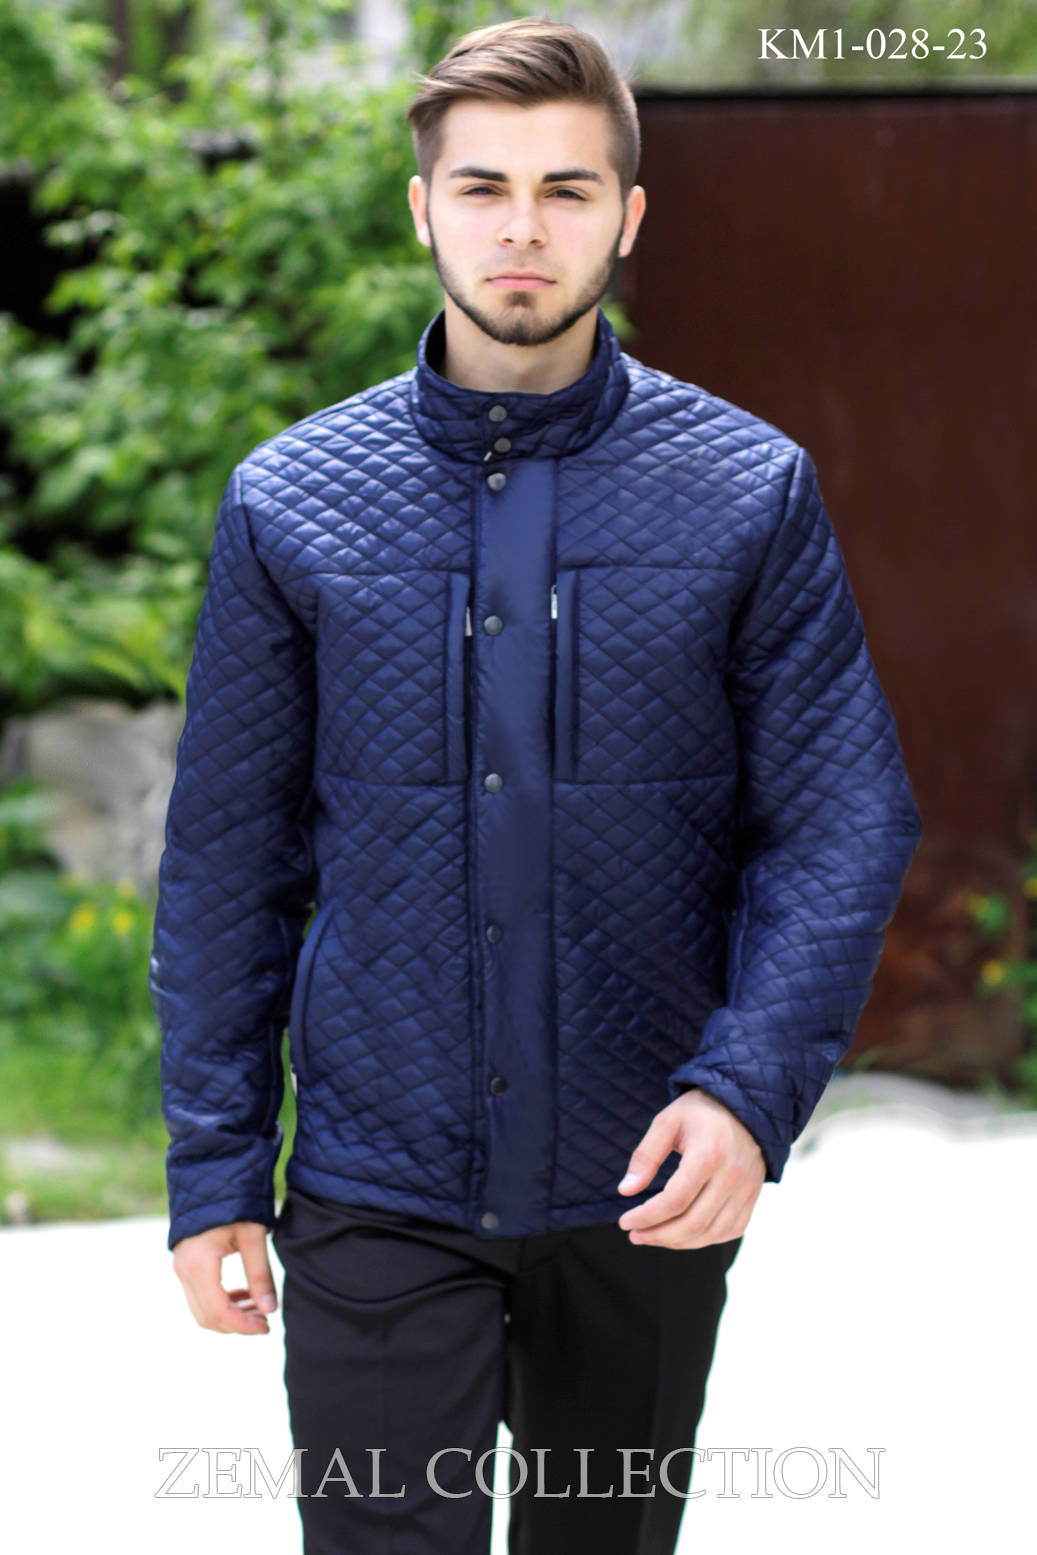 Купить мужские куртки оптом в Украине - Zemal